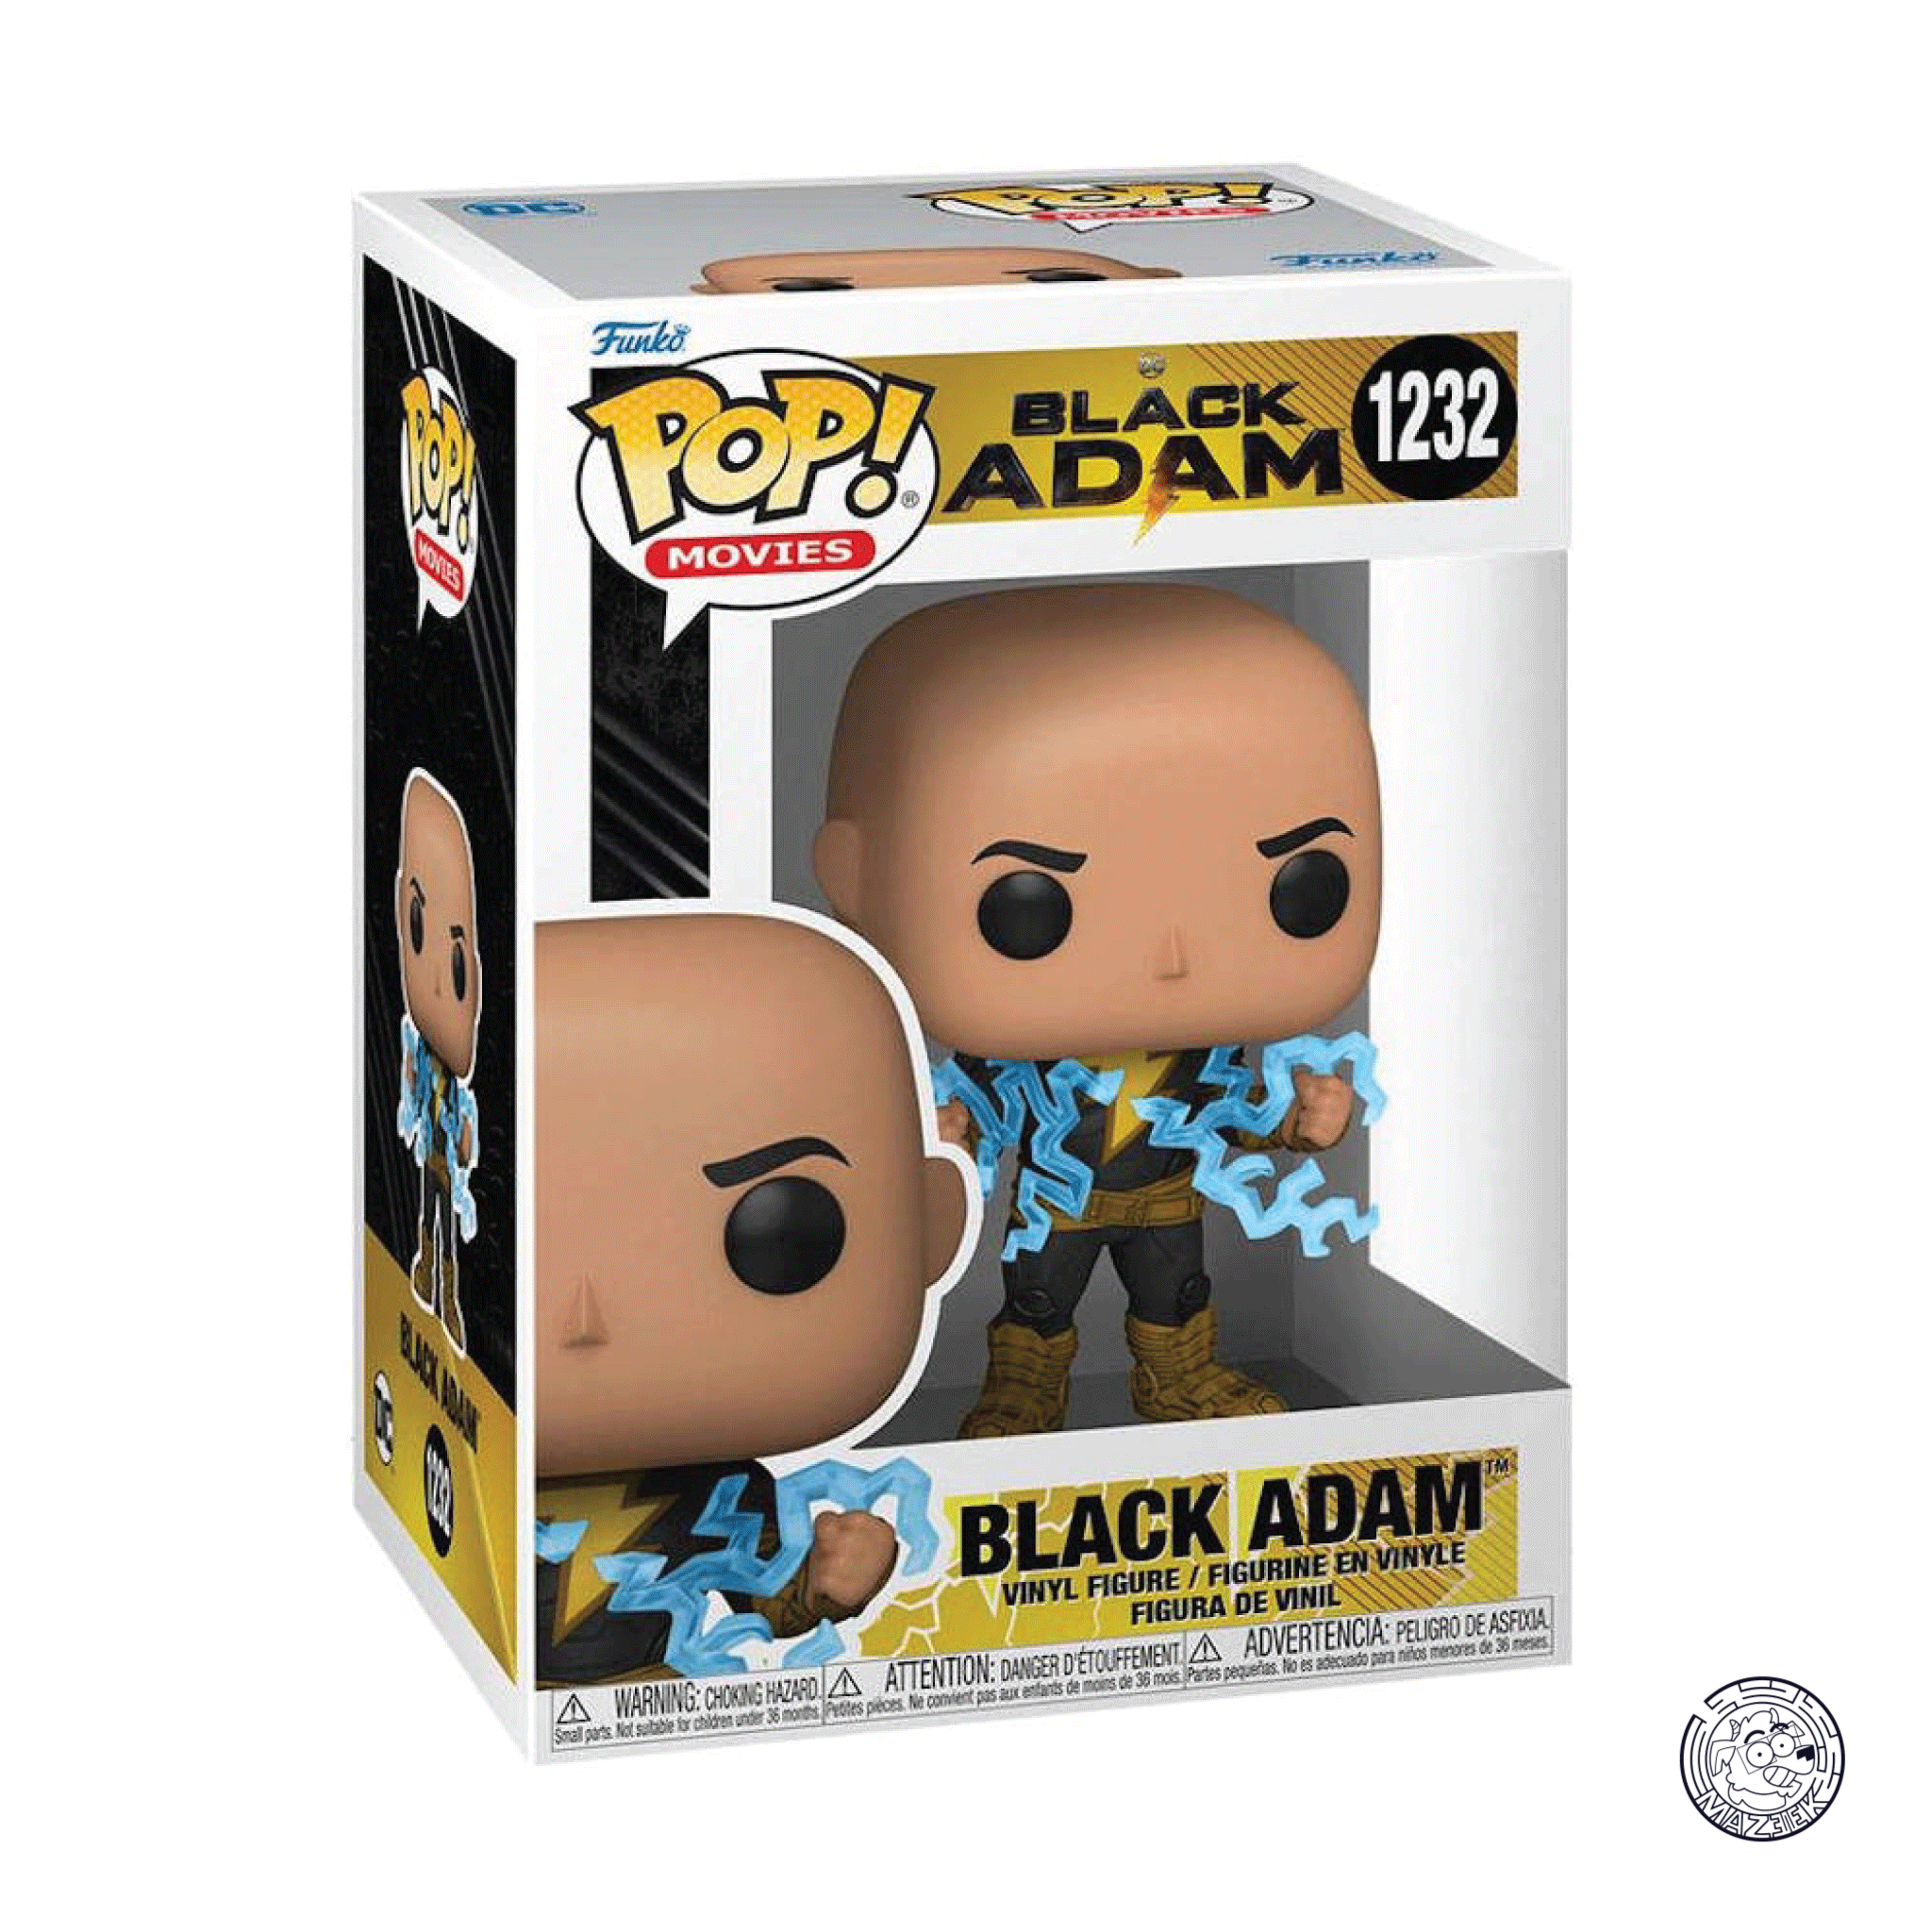 Funko POP! Black Adam: Black Adam 1232